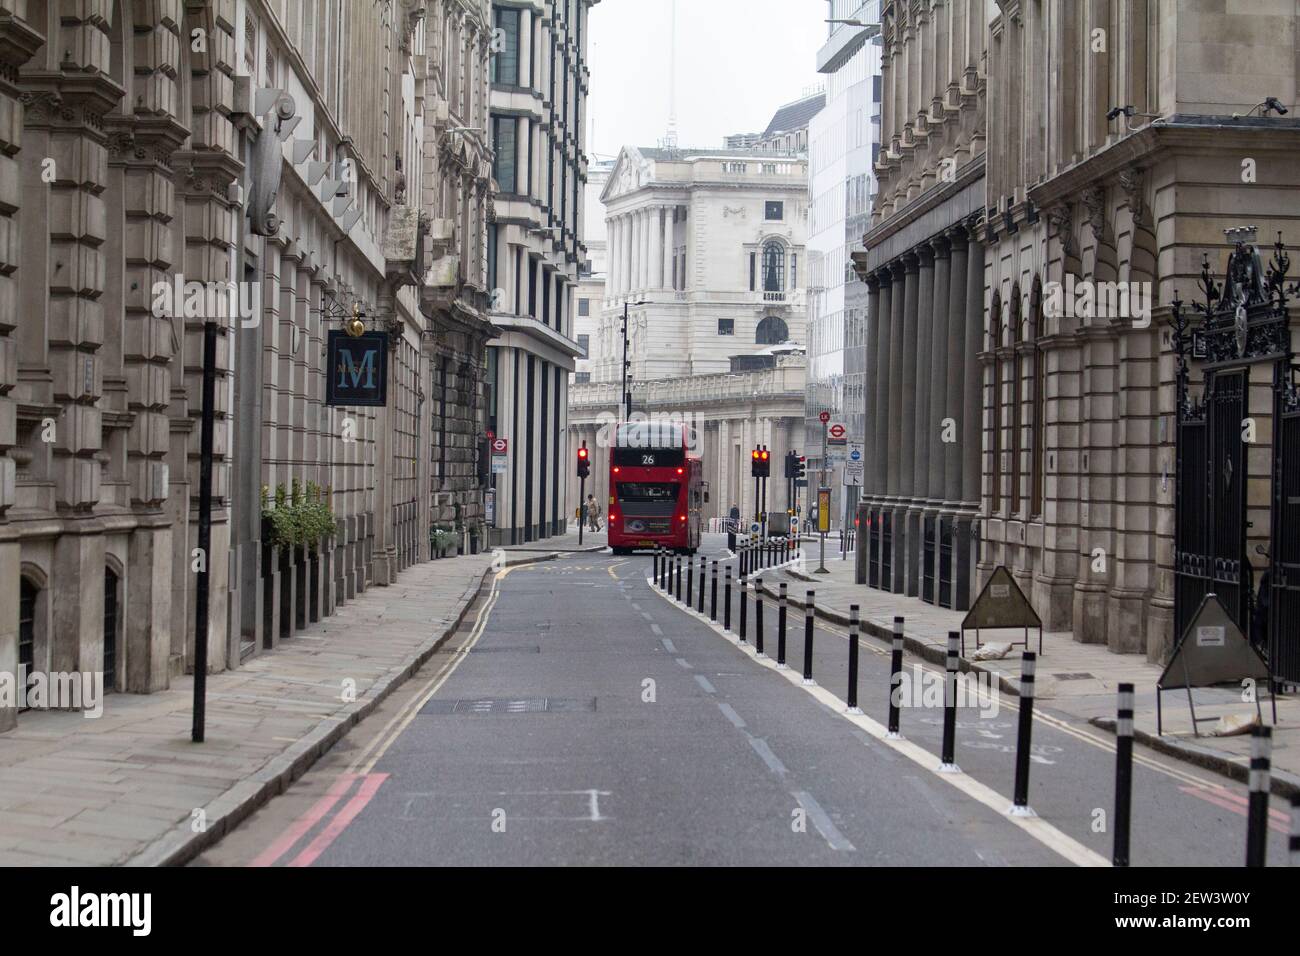 Leere Straßen während der Coronavirus Covid-19 Pandemie Lockdown, City of London mit Bank of England in der Mitte Hintergrund Stockfoto